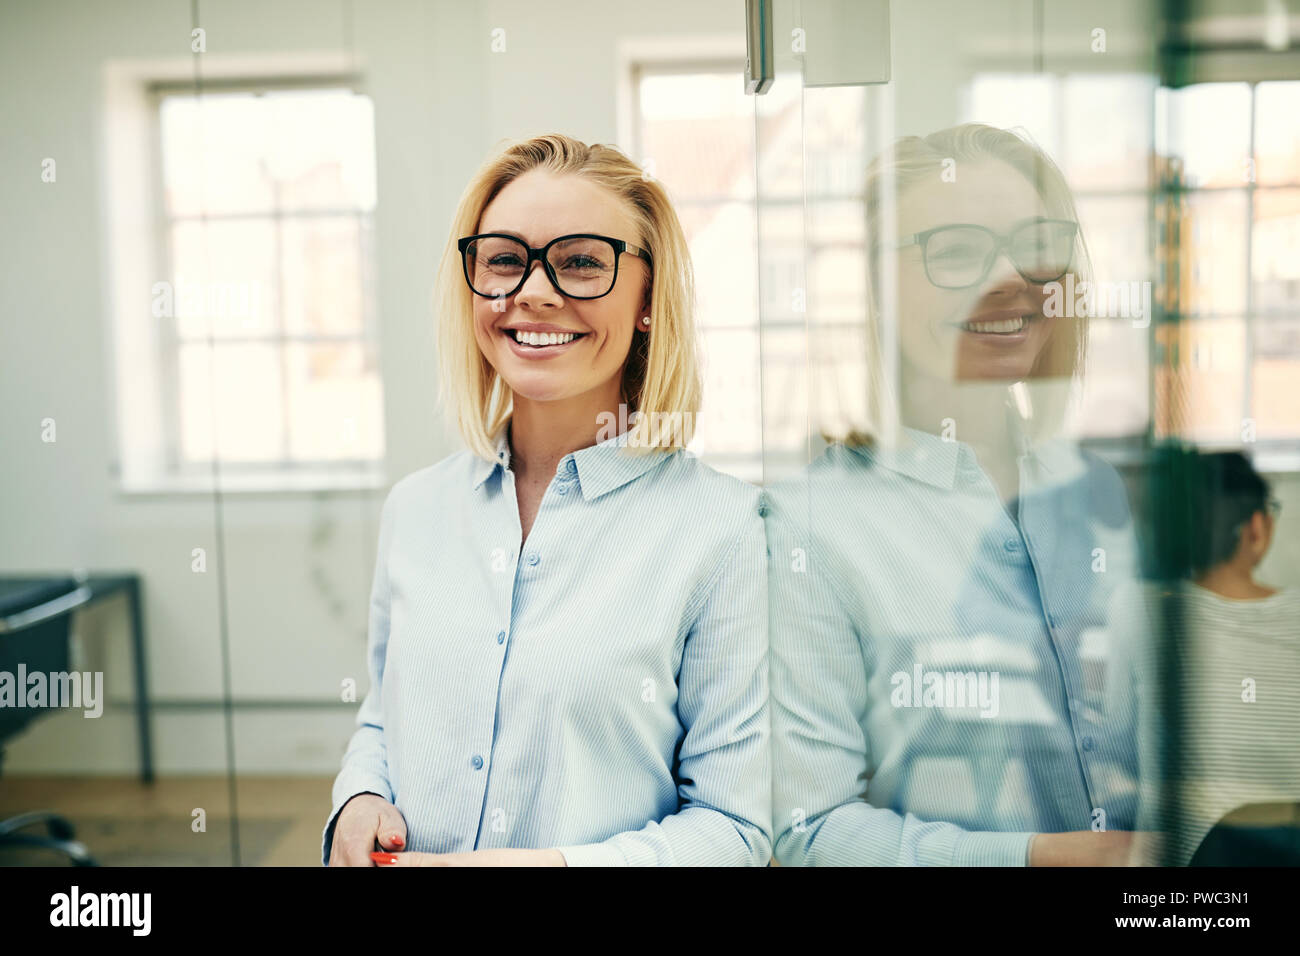 Young businesswoman smiling avec confiance tout en s'appuyant contre un mur de verre dans un bureau avec des collègues dans l'arrière-plan Banque D'Images